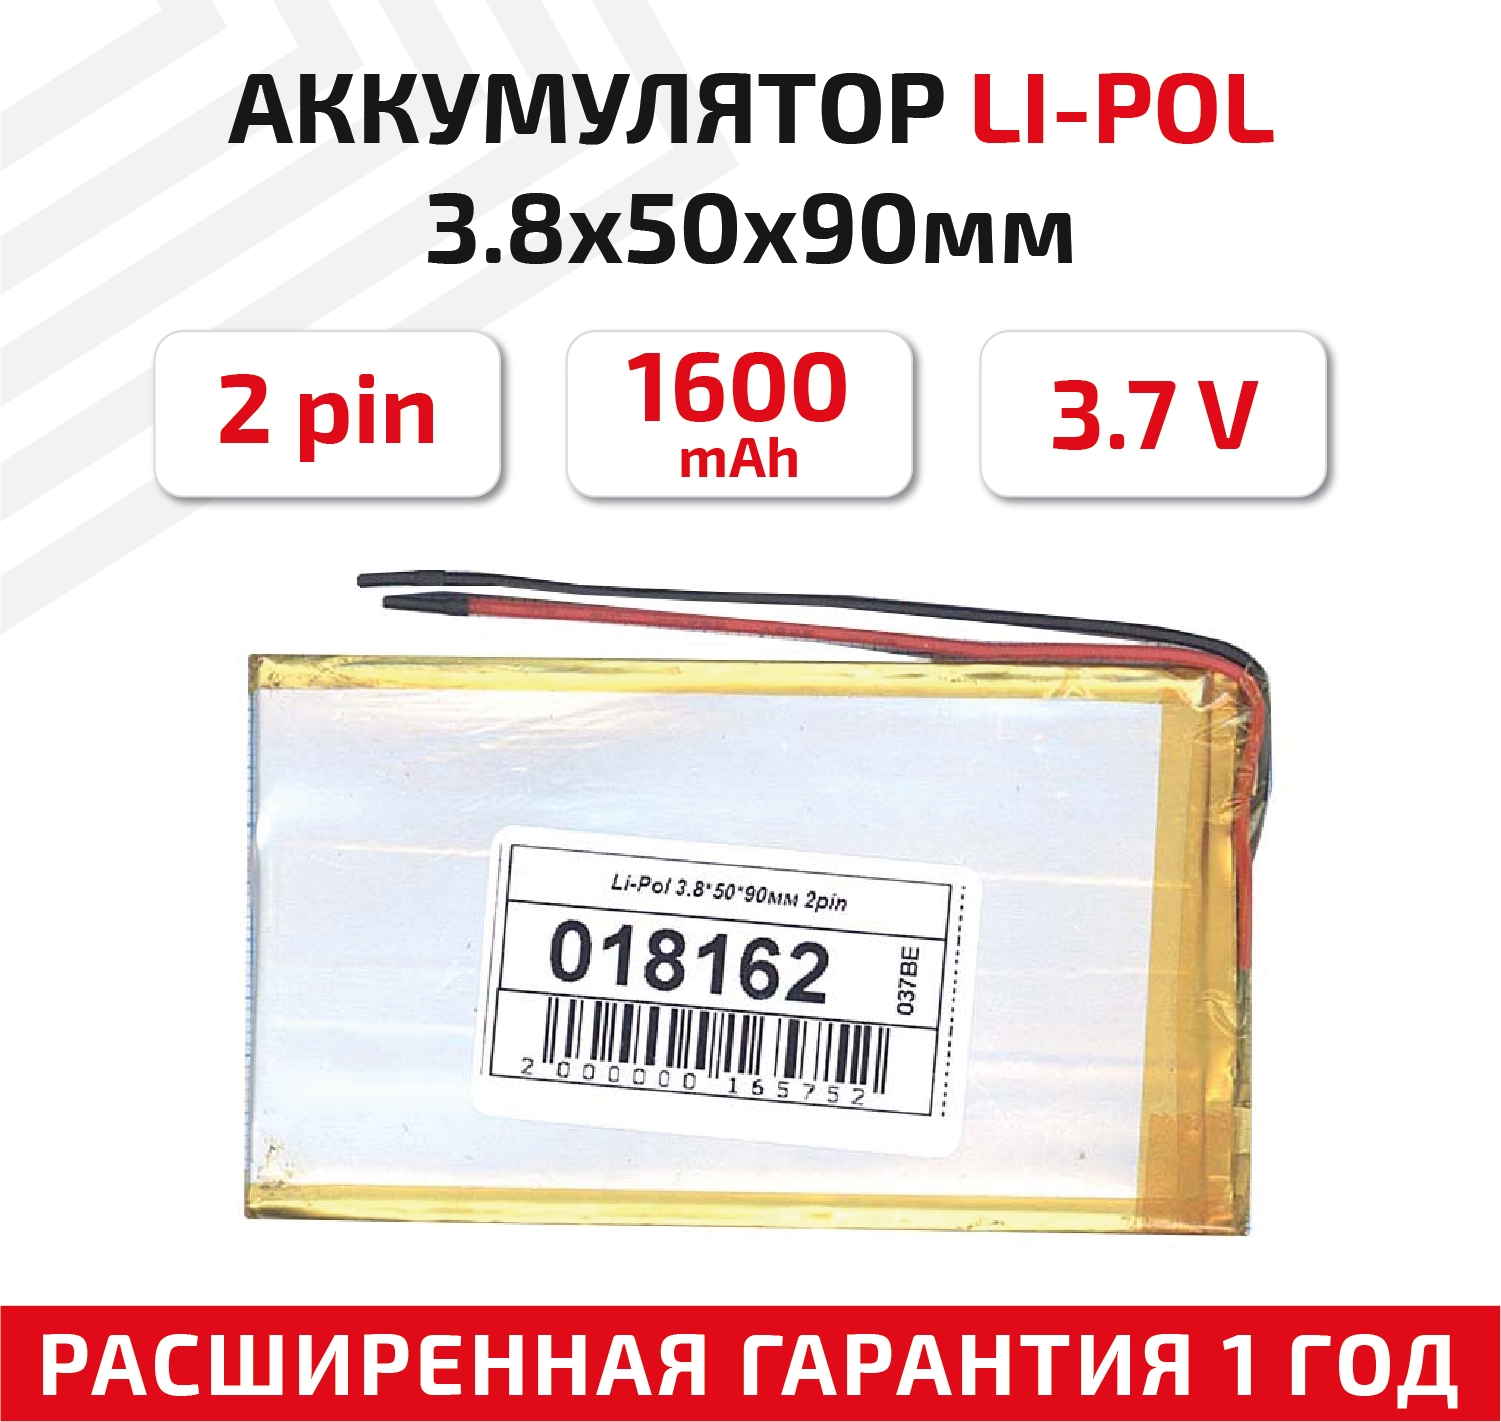 Универсальный аккумулятор (АКБ) для планшета, видеорегистратора и др, 3.8х50х90мм, 1600мАч, 3.7В, Li-Pol, 2pin (на 2 провода)